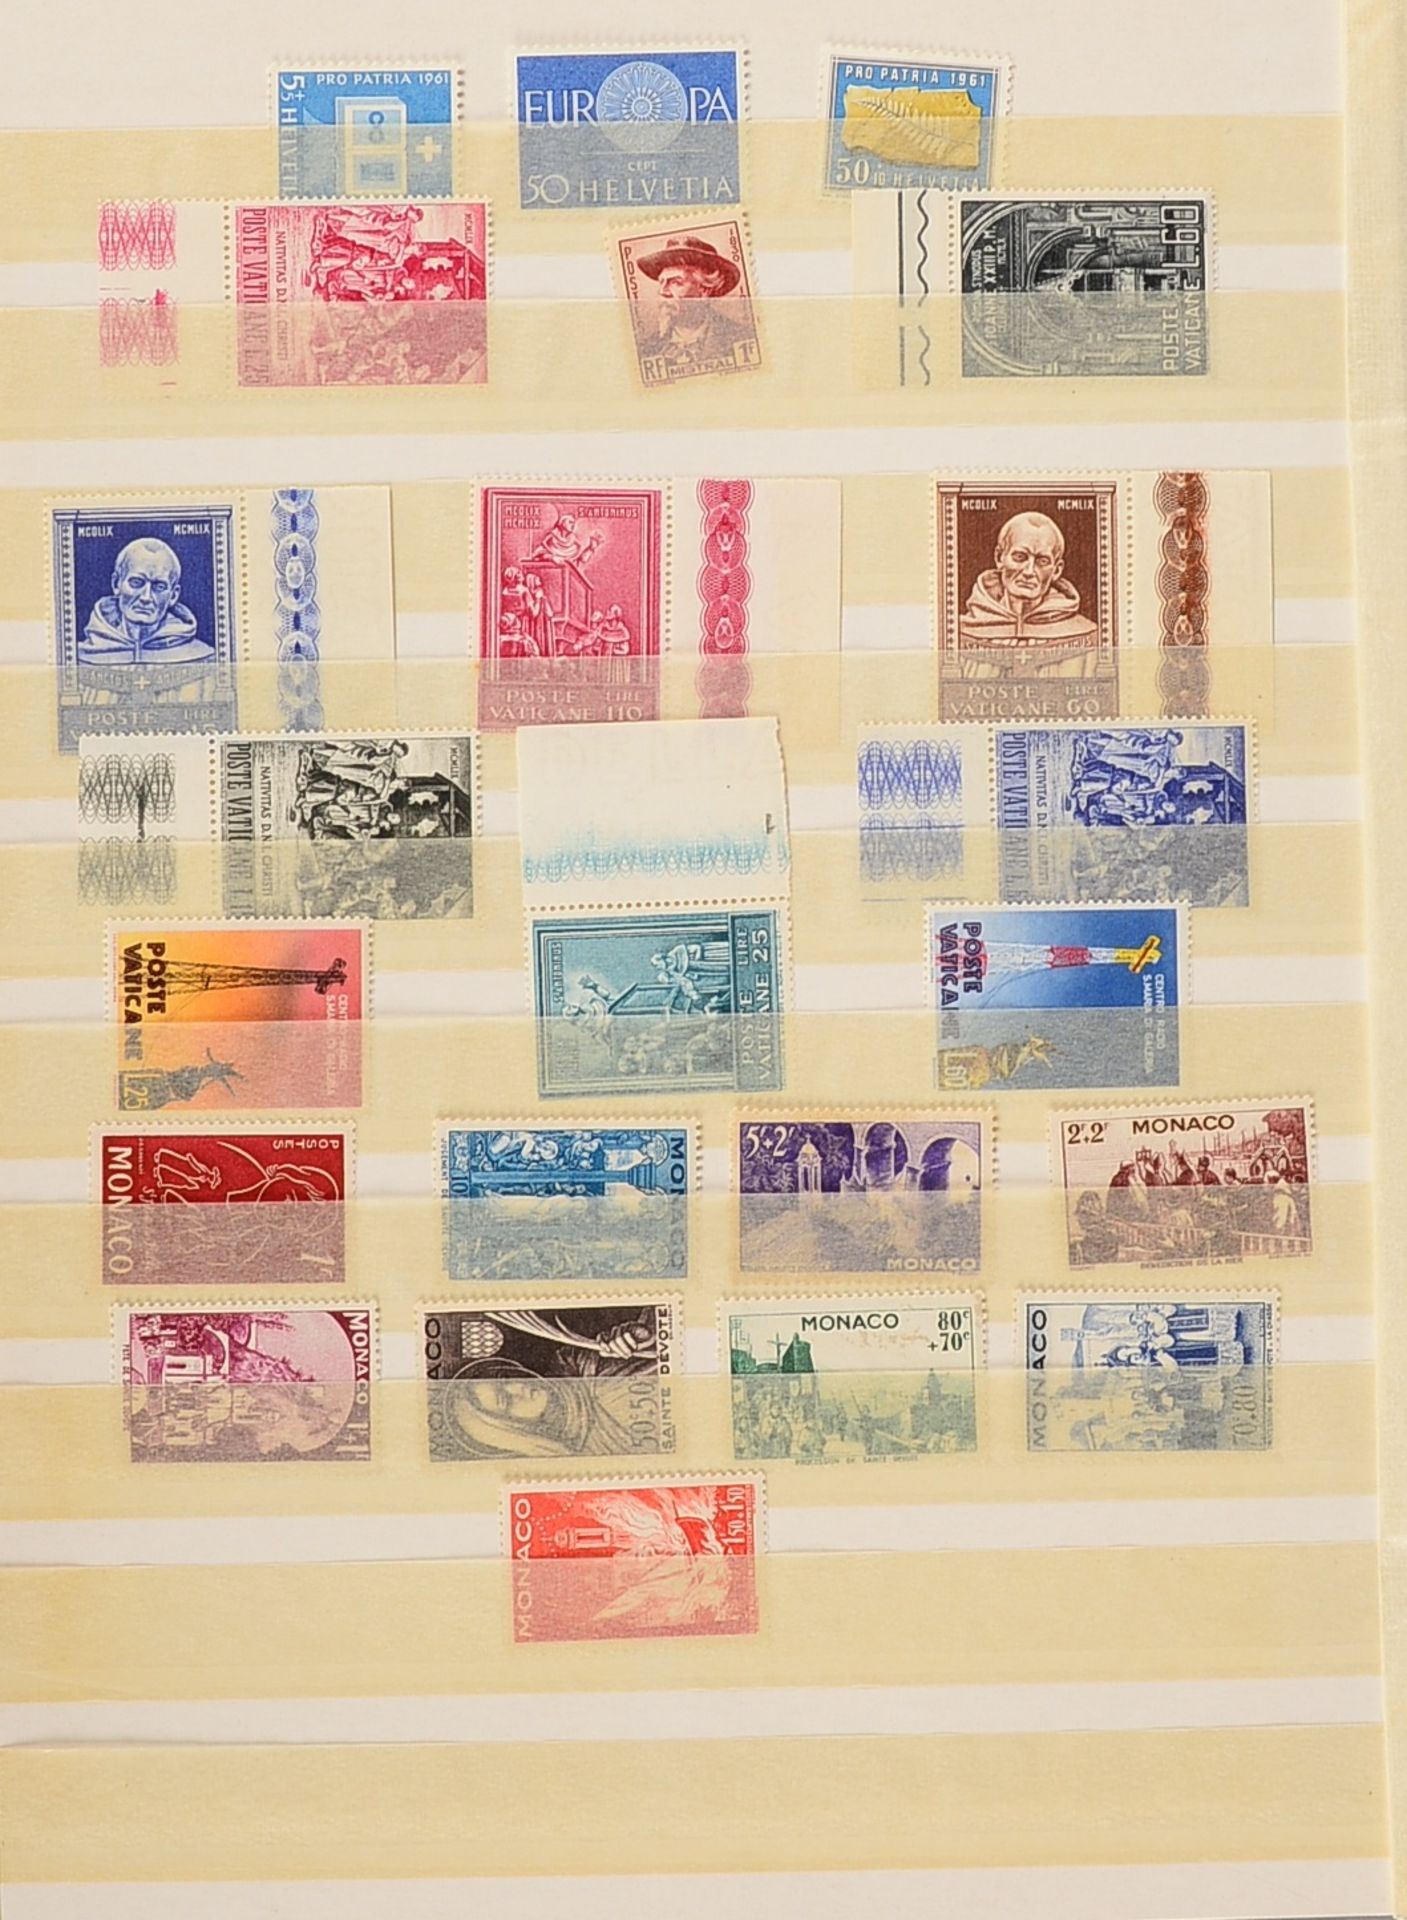 Briefmarken, 1900 - ca. 1960: 'Europa' - 'Deutsches Reich', 'Germania', 'III. Reich', - Image 6 of 6